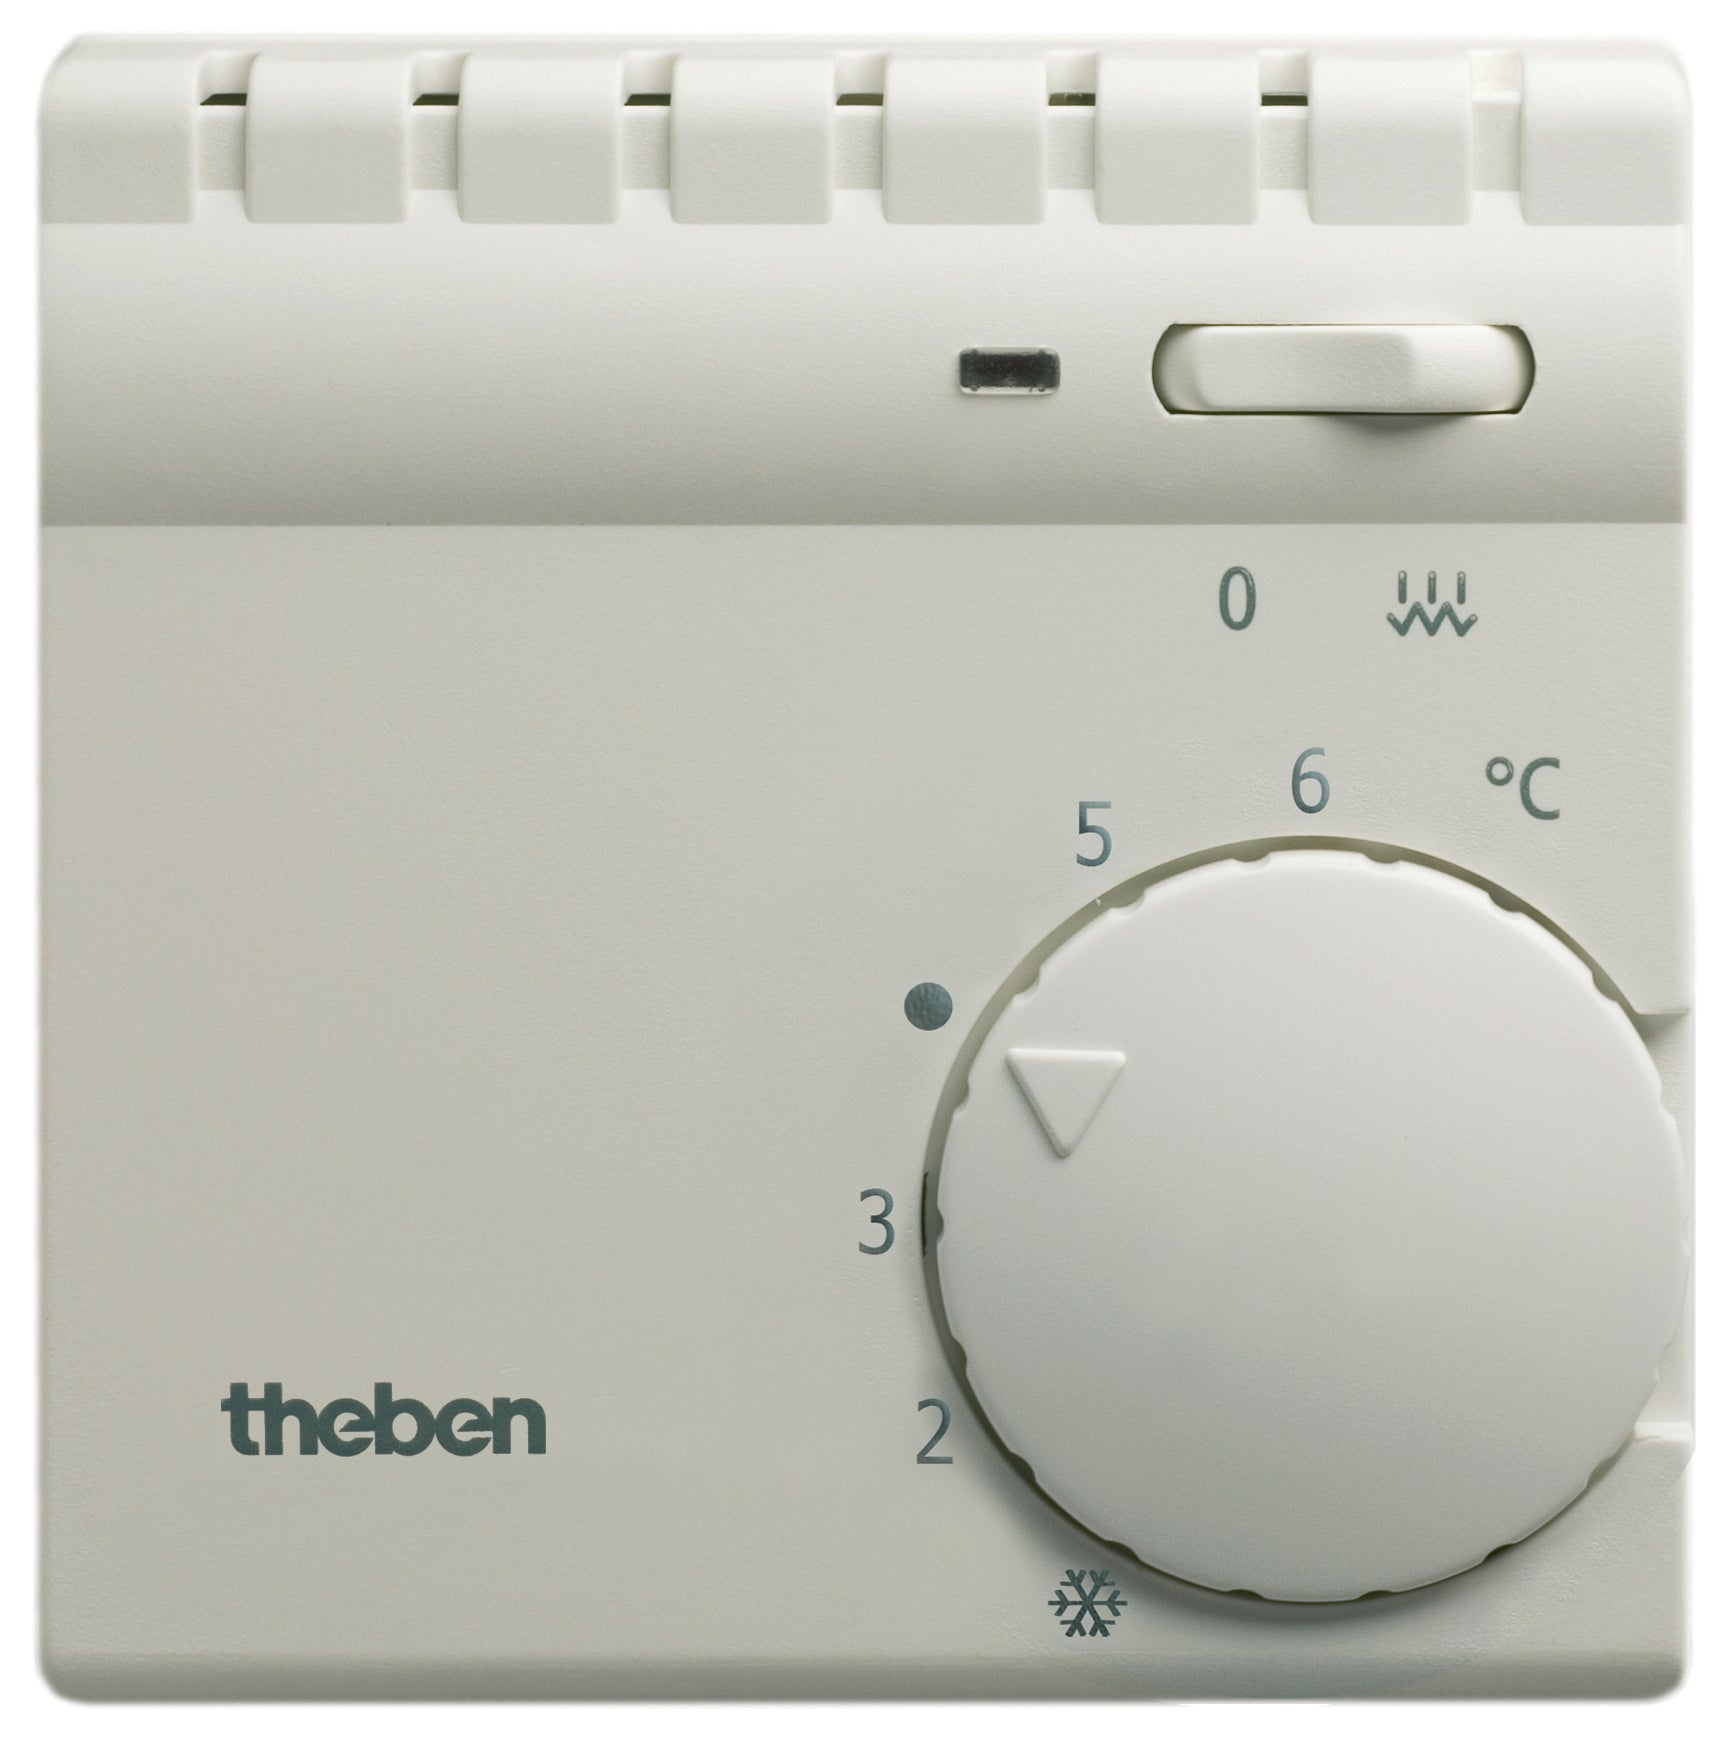 THEBEN Raum-Thermostate mit Schalter für Zusatzheizung und Kontrolllampe